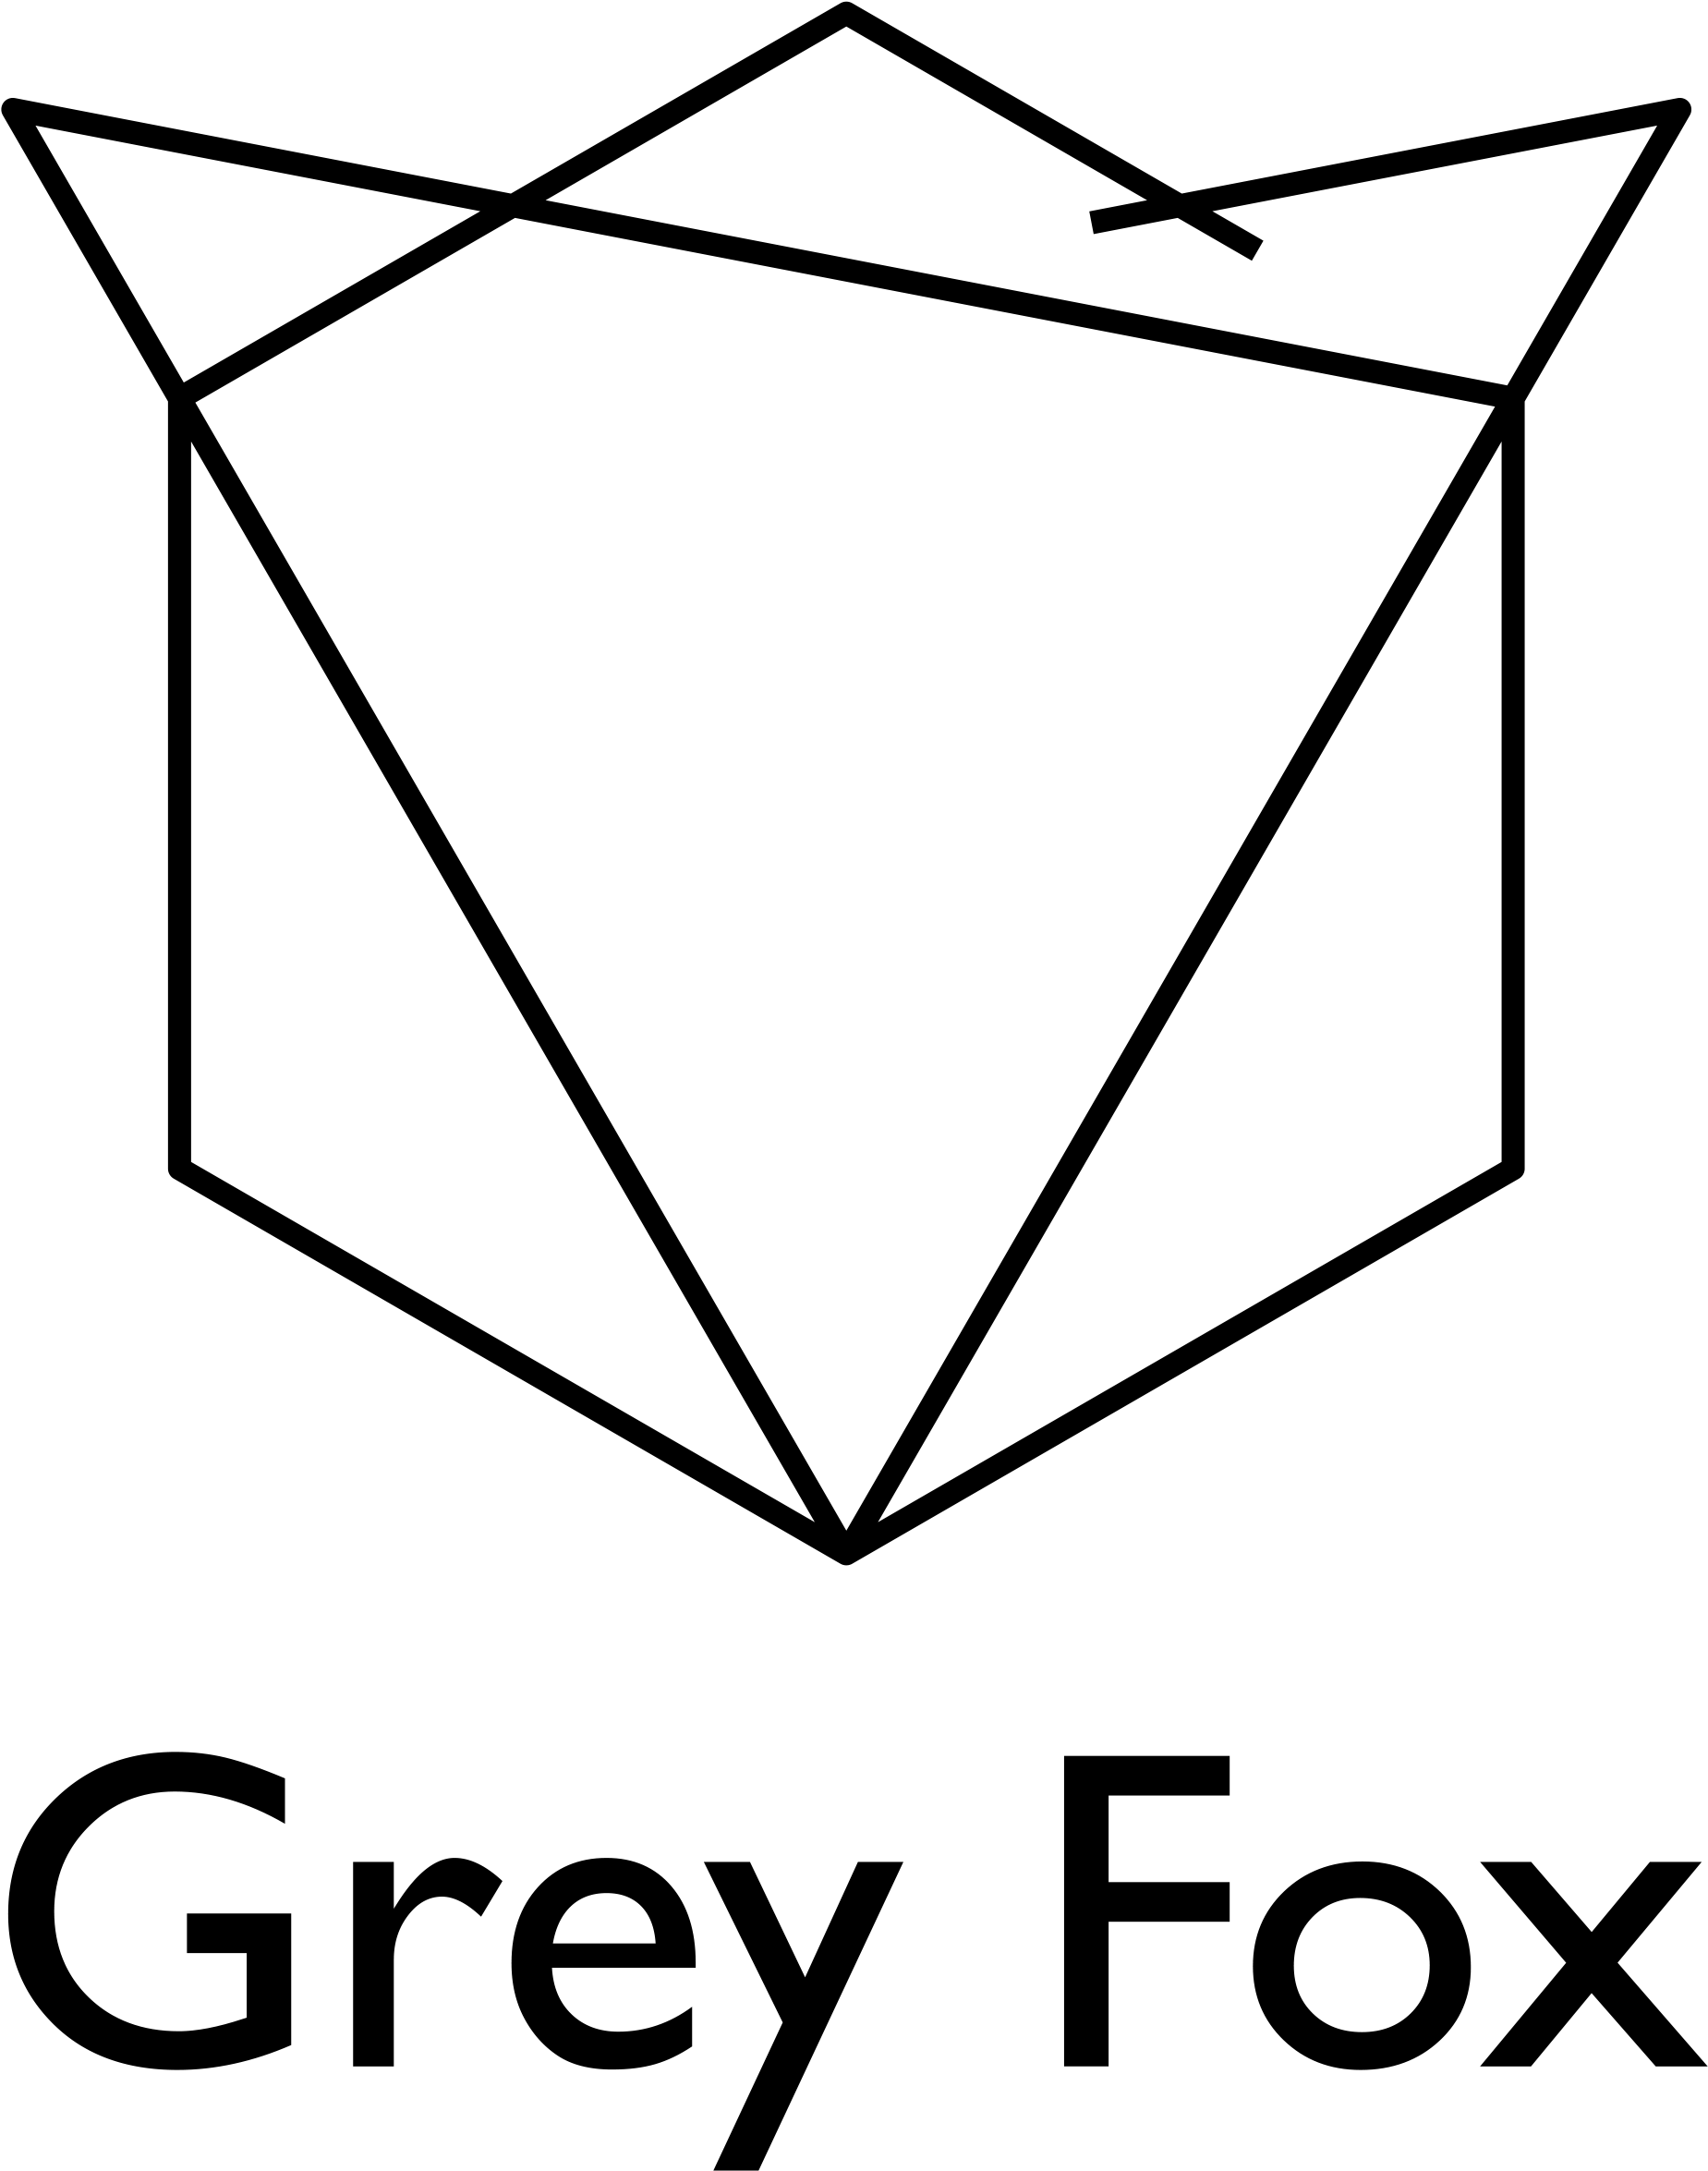 About - Emblem (1918x2417)